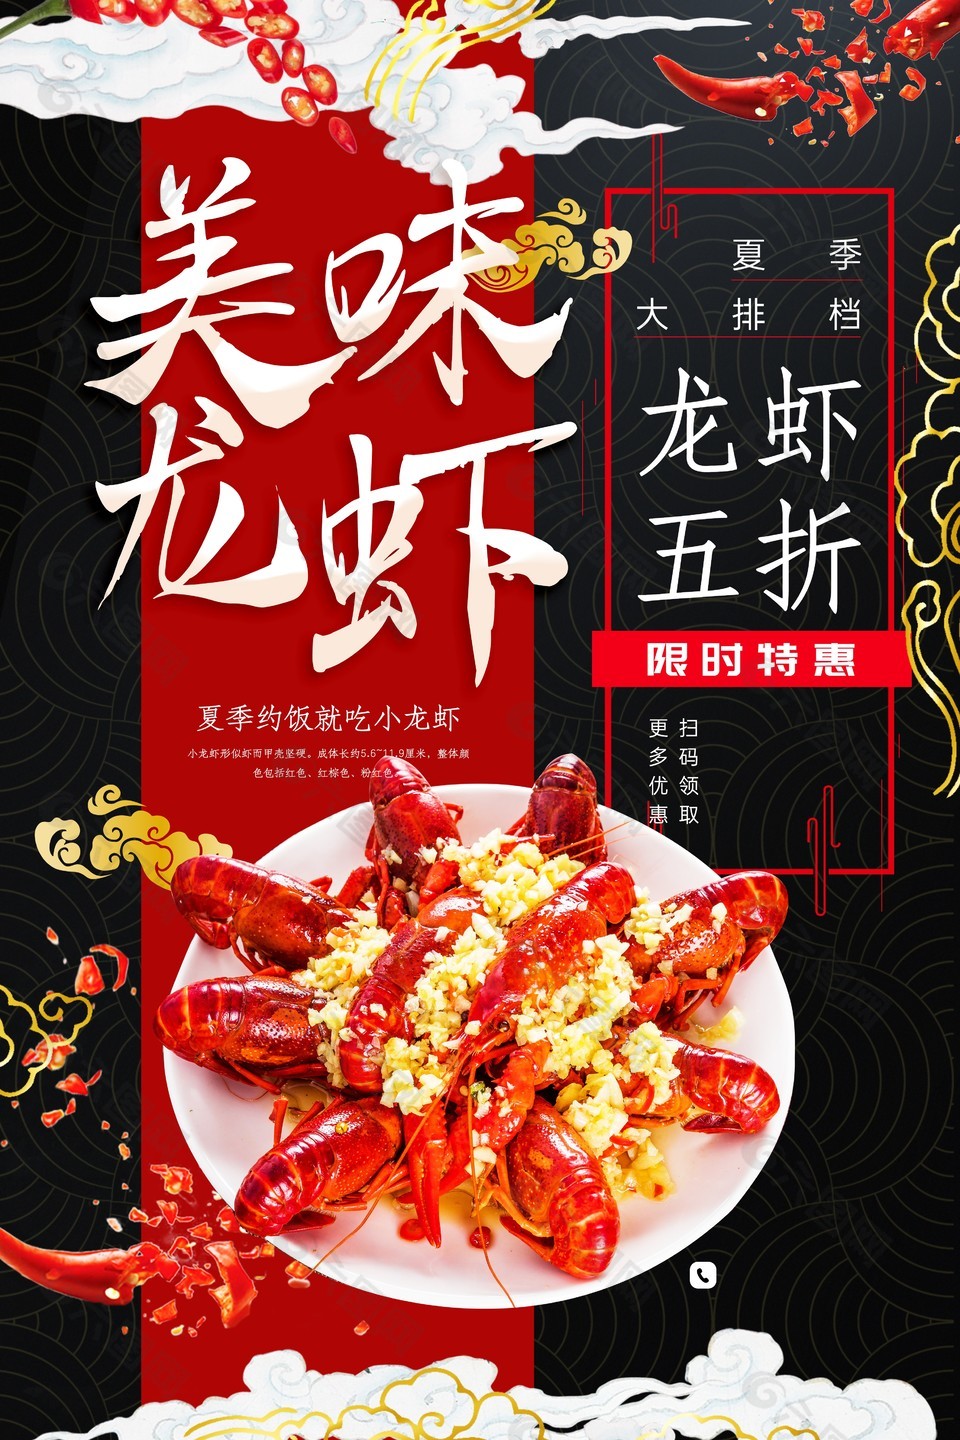 美味龙虾五折活动限时特惠促销海报